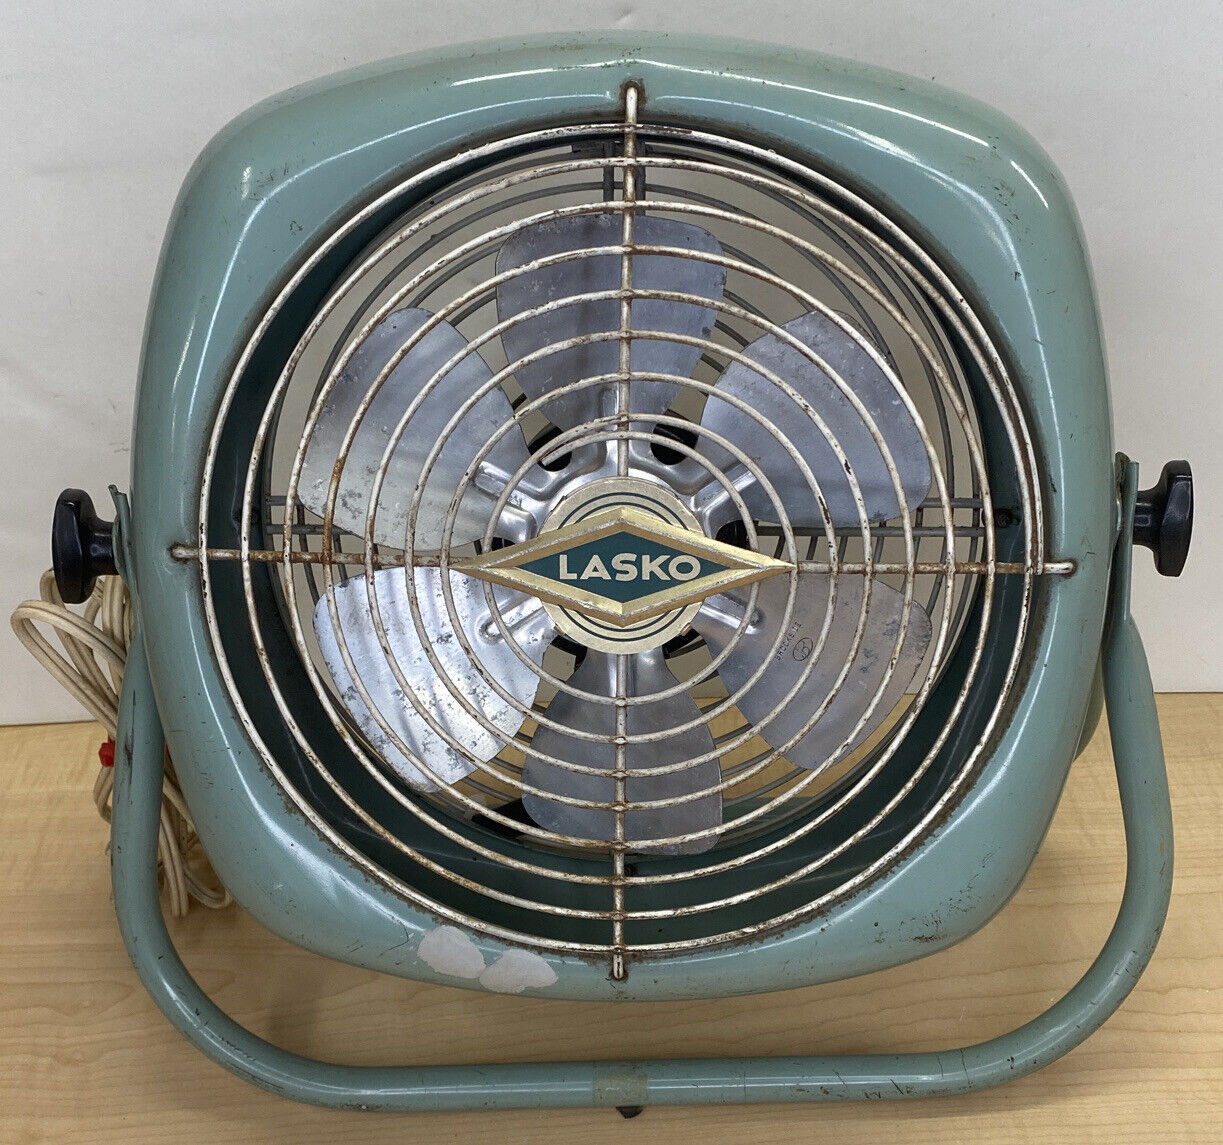 Vintage Lasko Electric Fan Teal MCM Turquoise Square Tilt-Back Working 1 Speed